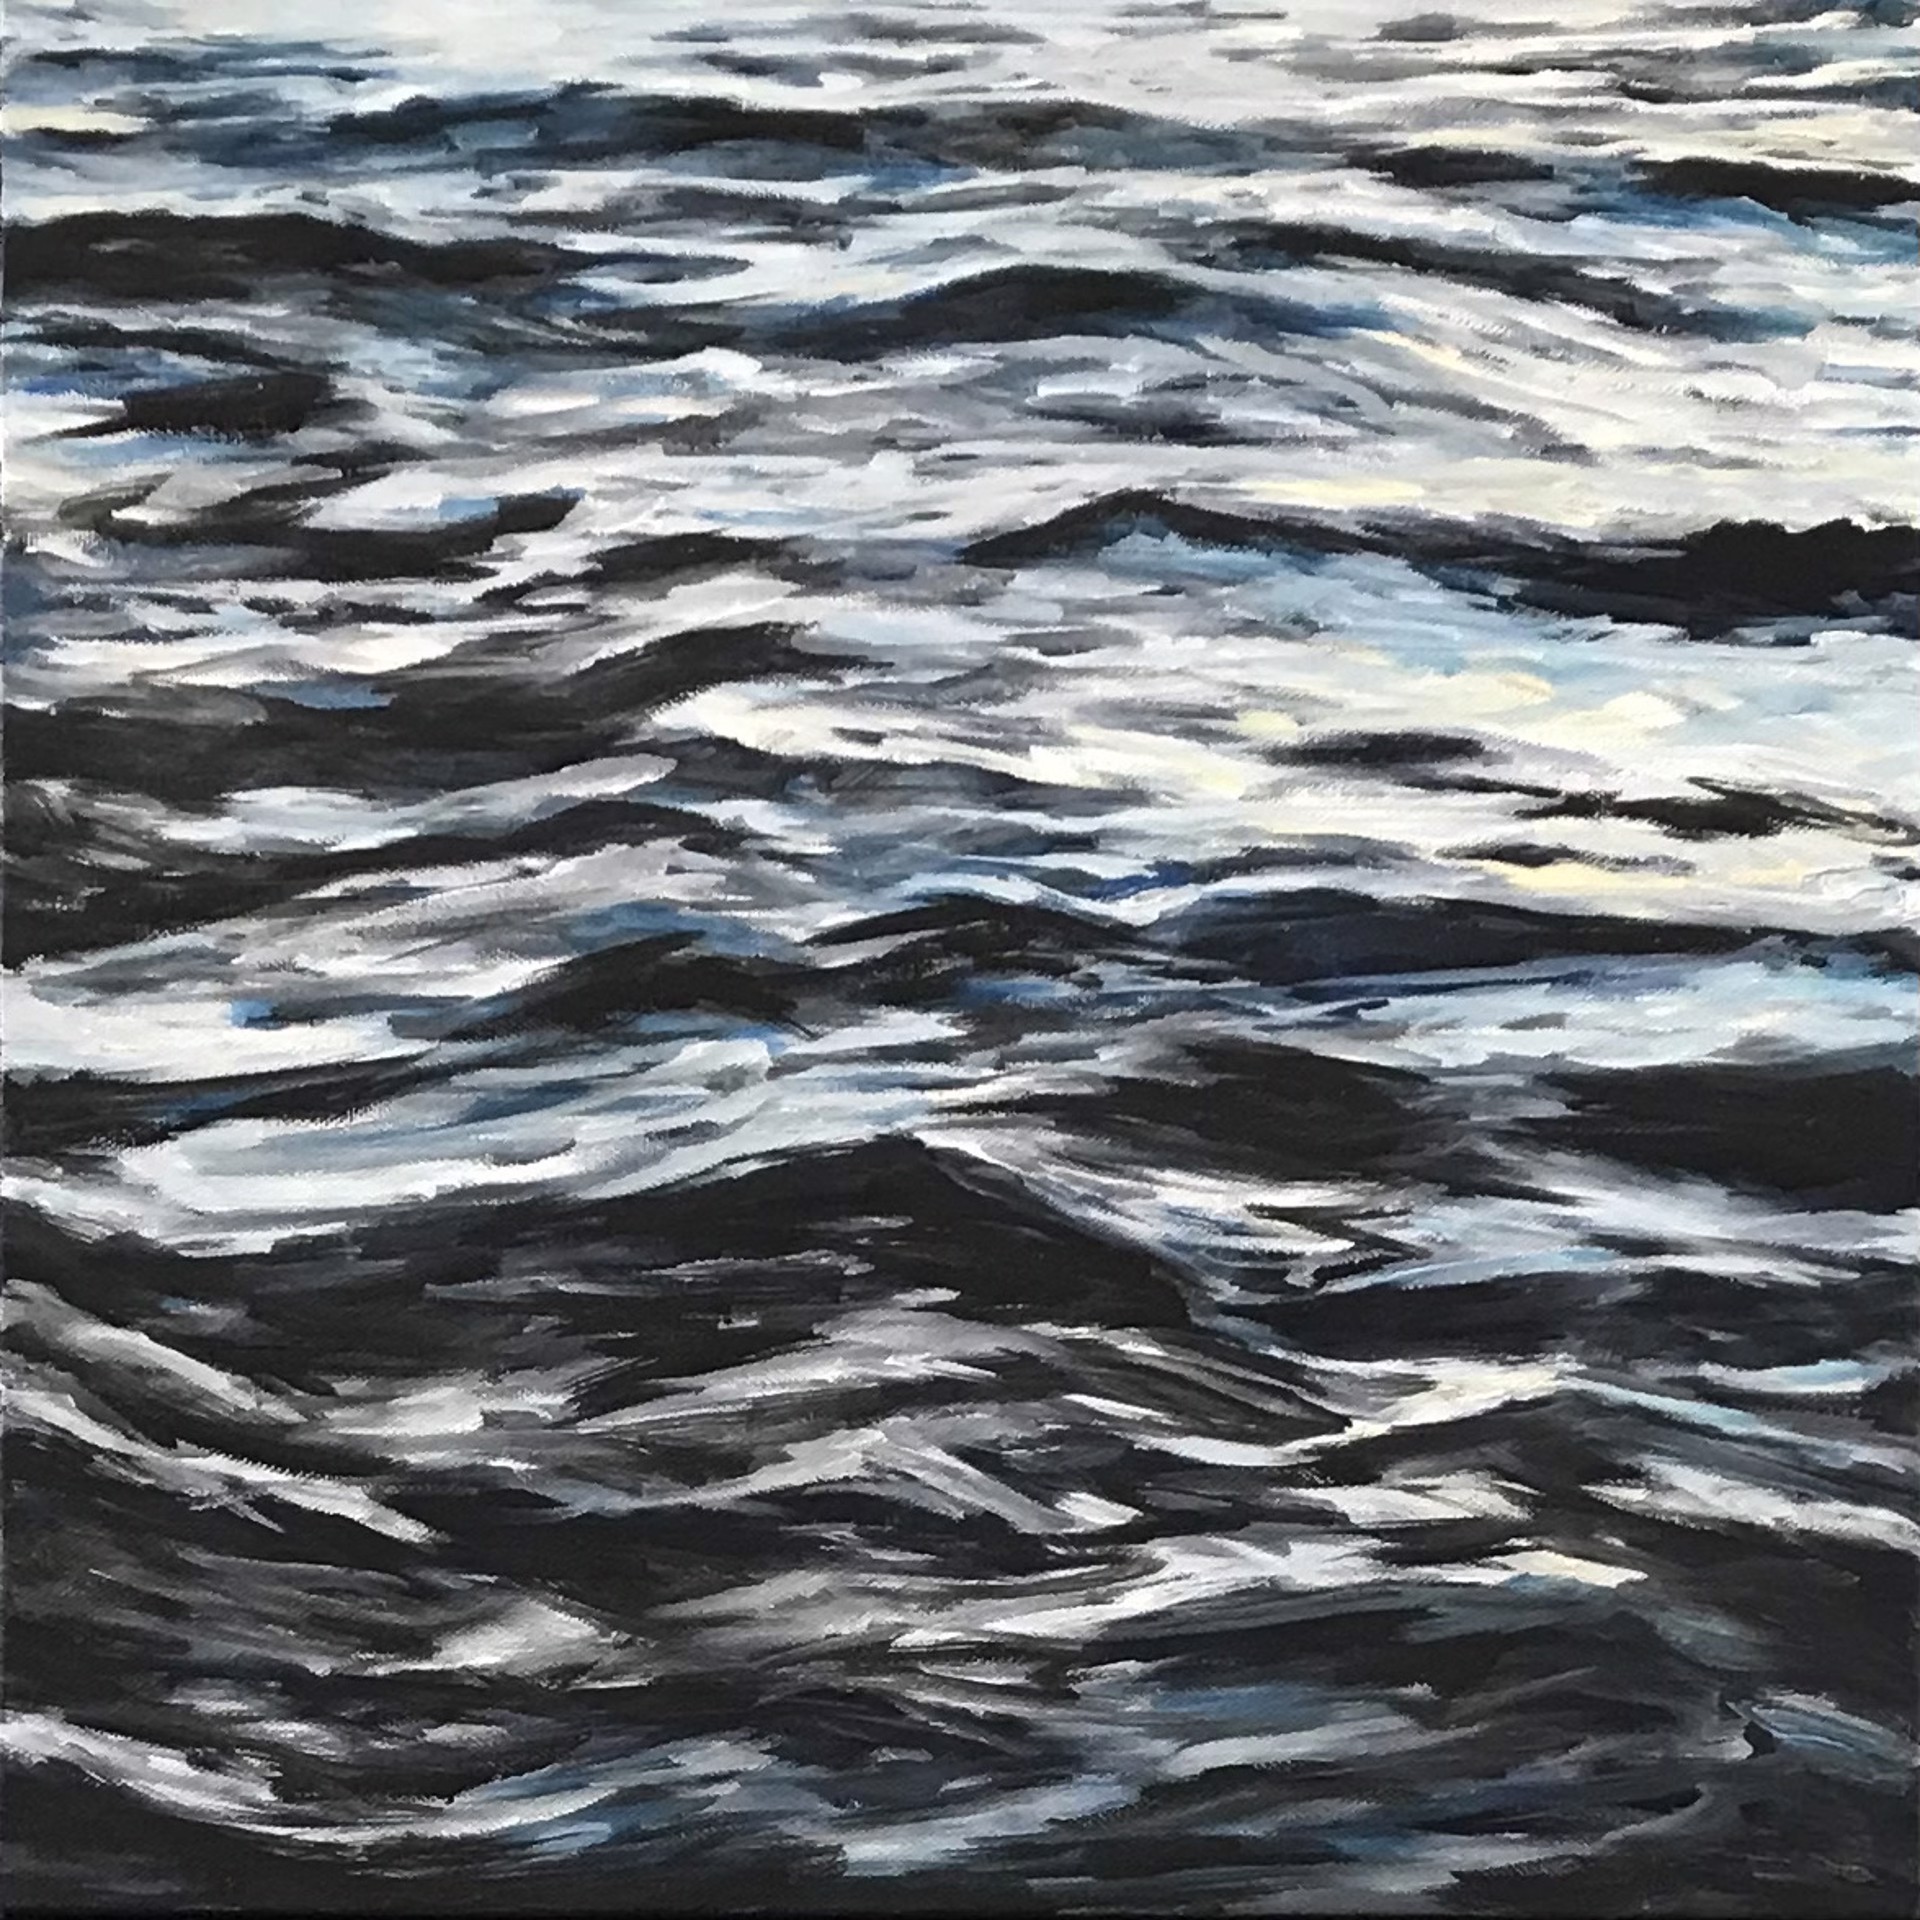 Lahaina Waves 8 by Valerie Eickmeier